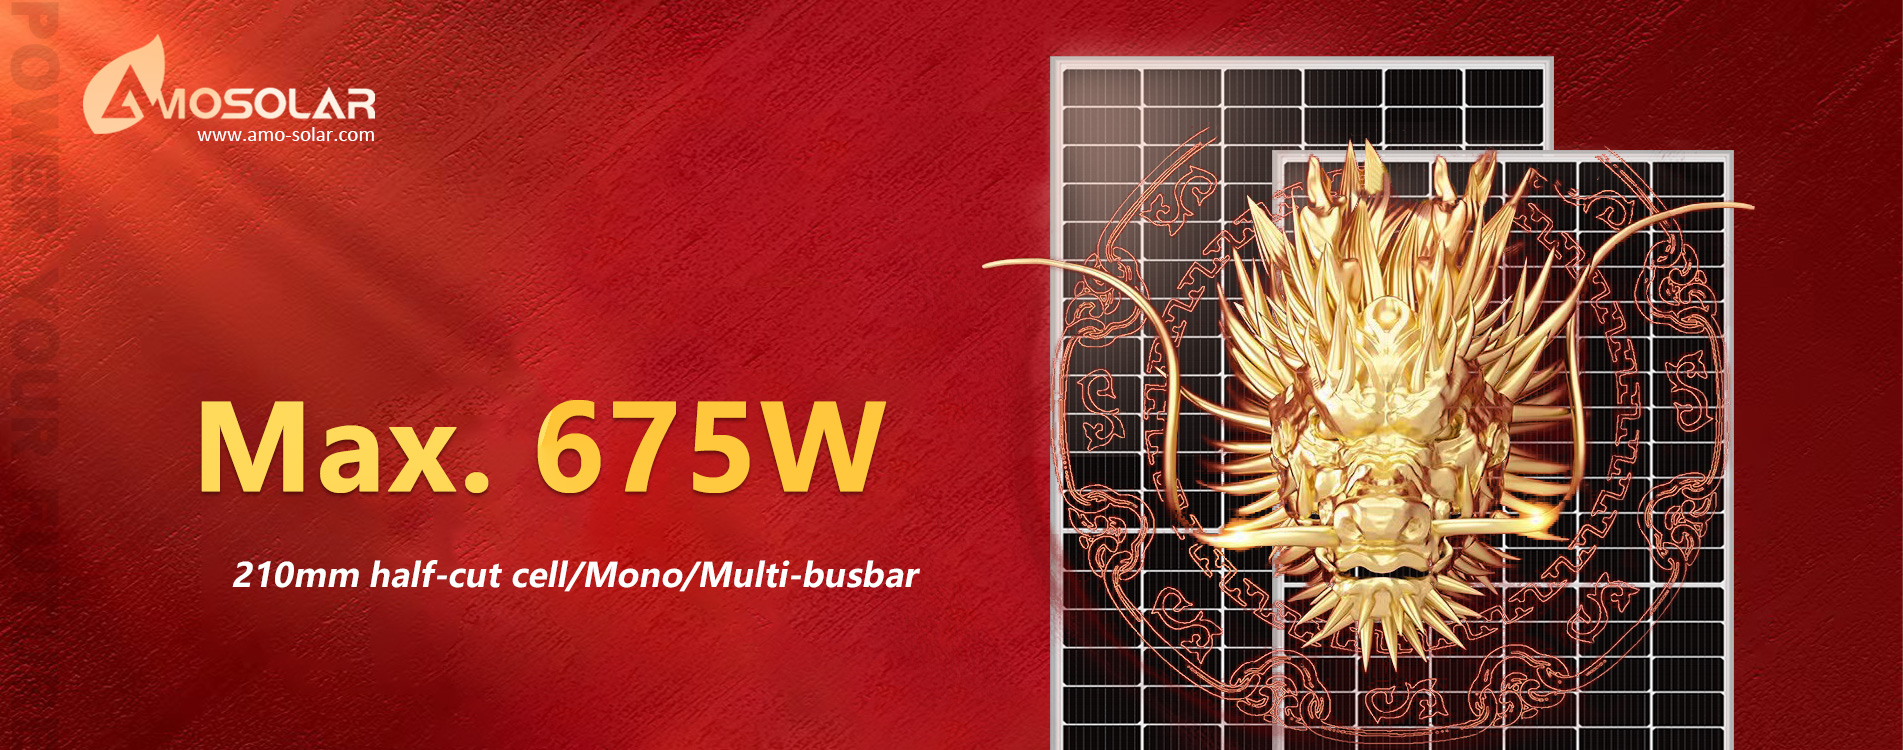 Half-cut cell 525W-550W Monocrystalline High Efficiency Solar pv module